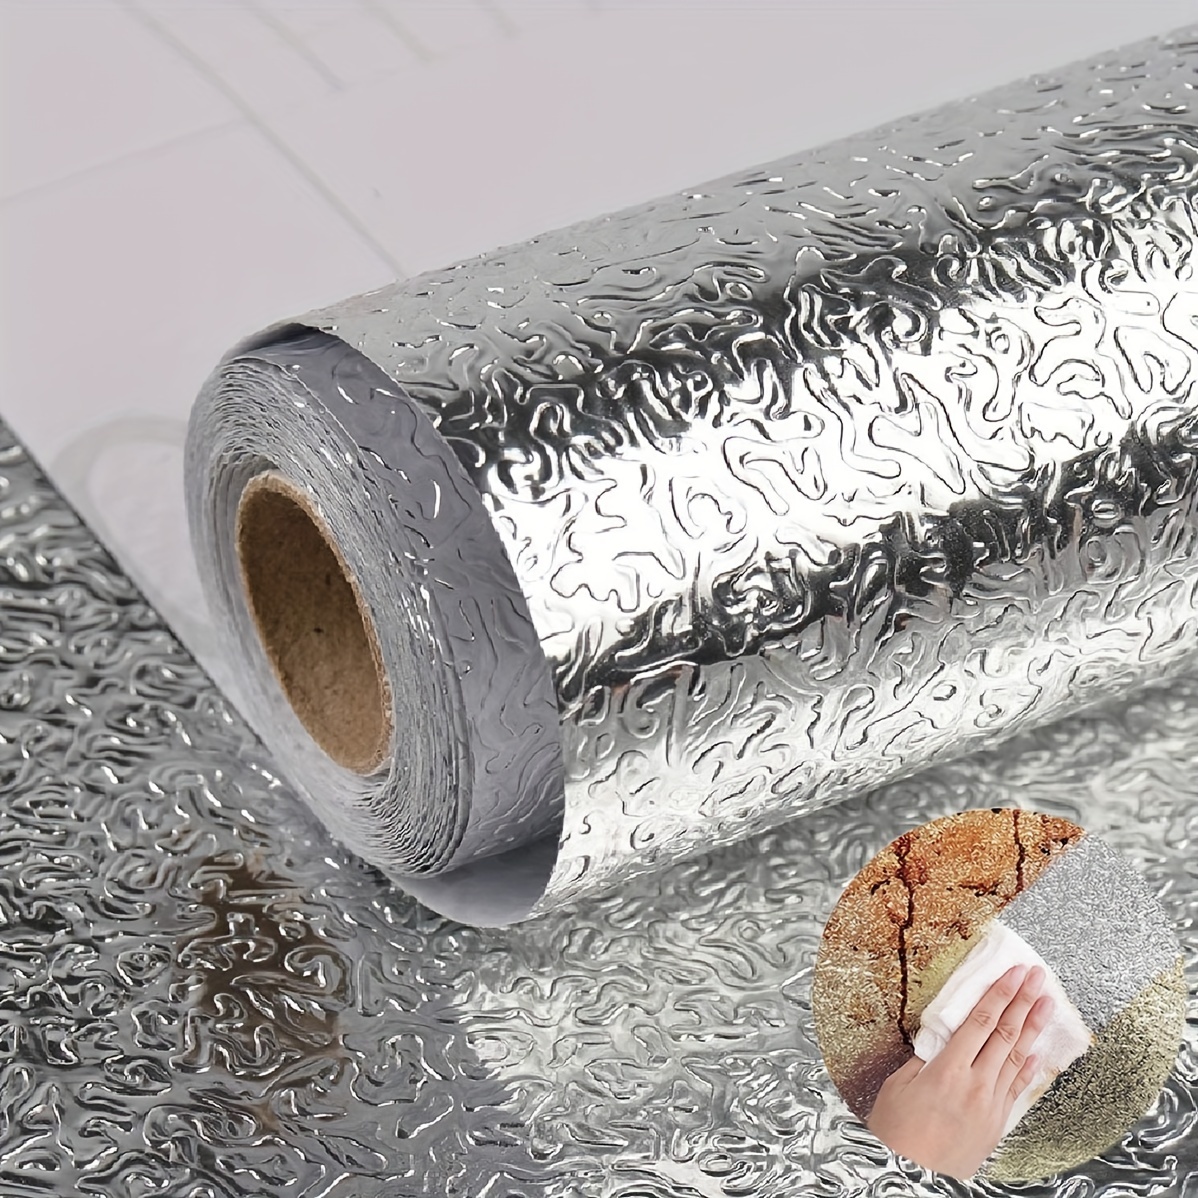 Papel Aluminio Adhesivo, Fácil de Limpiar, Resistente al Fuego